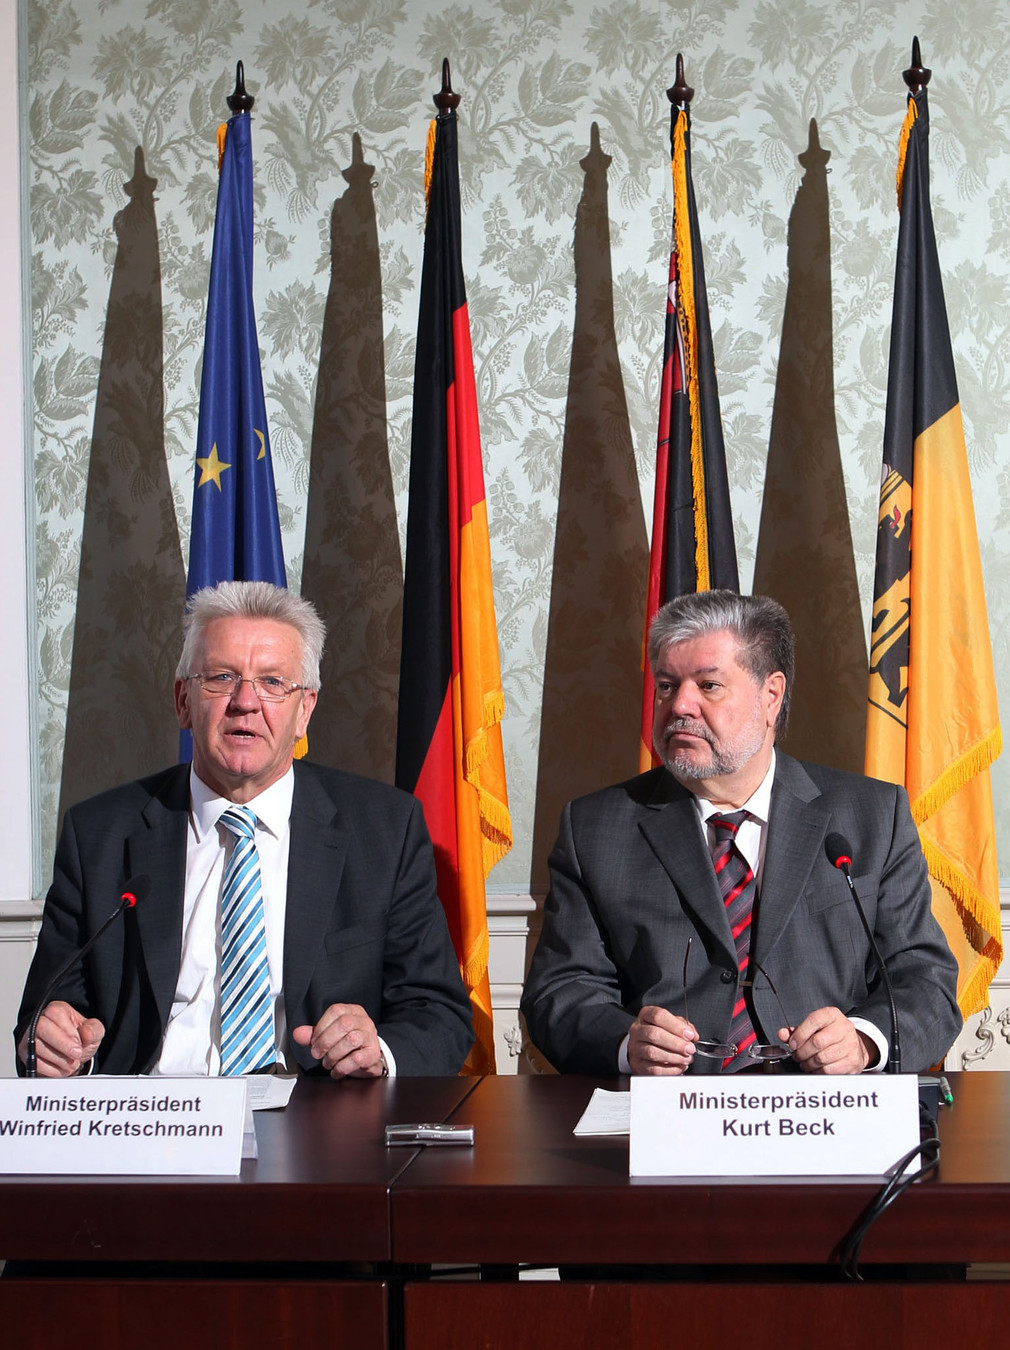 Ministerpräsident Winfried Kretschmann (l.) und Ministerpräsident Kurt Beck (r.) bei der Pressekonferenz